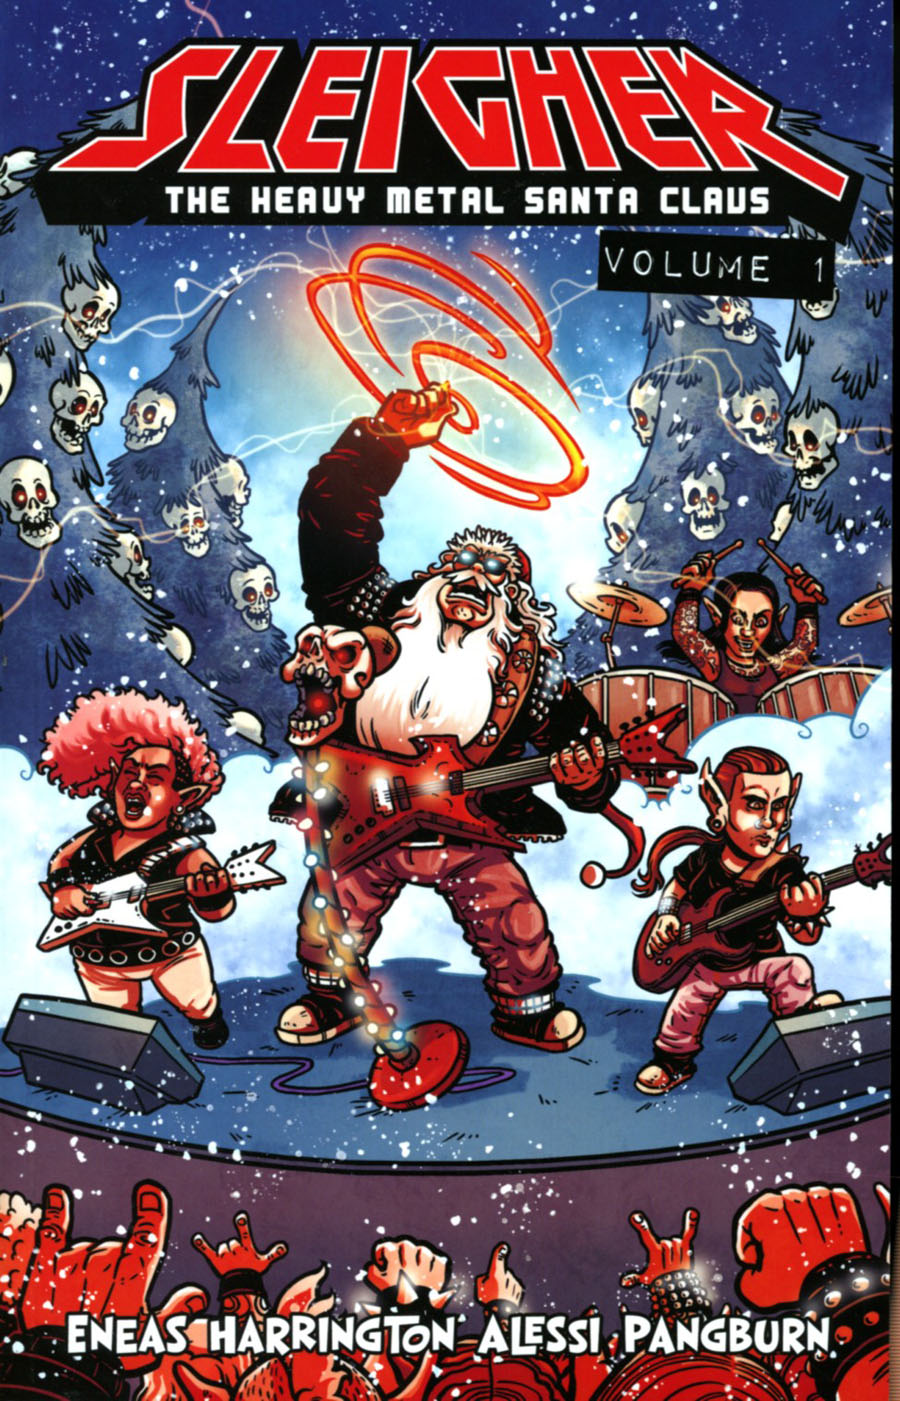 Sleigher Vol 1 Heavy Metal Santa Claus TP